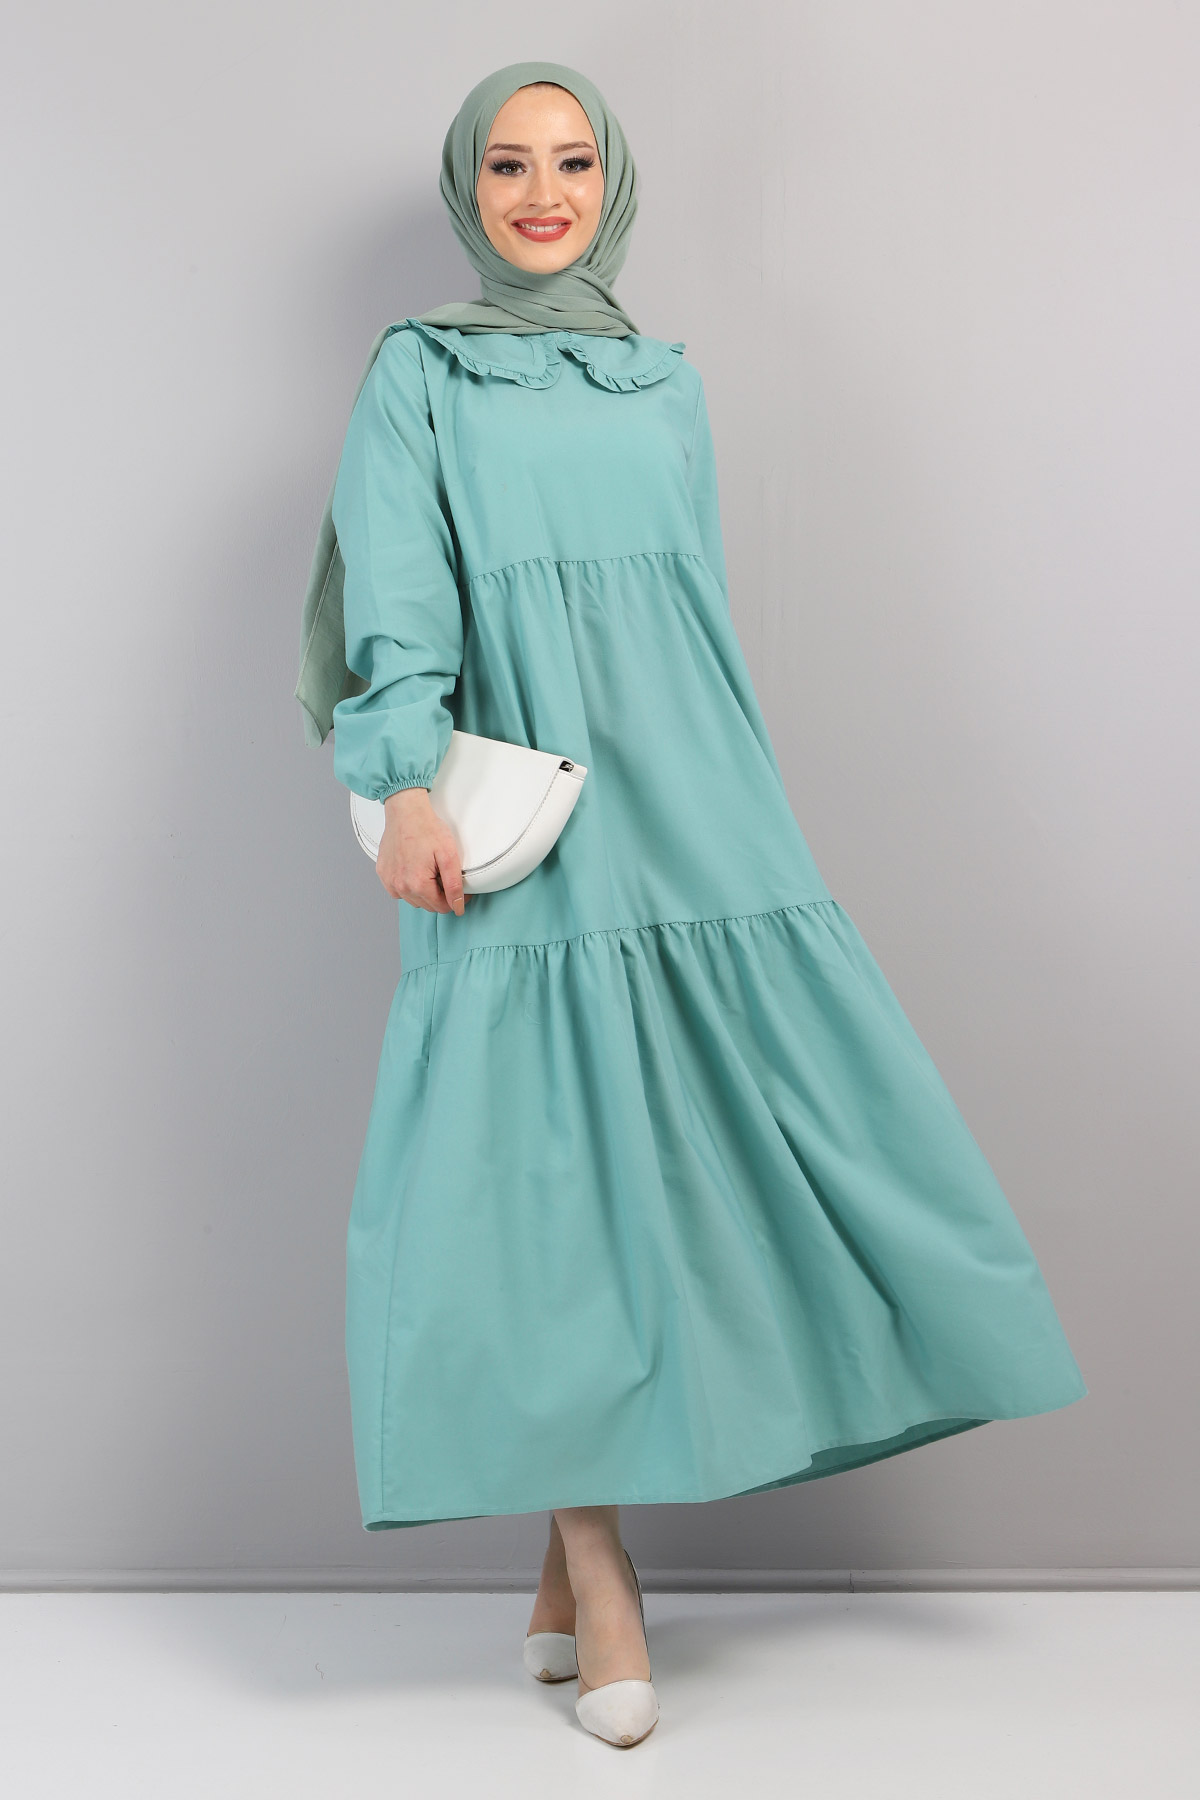 Tesettür Dünyası - Bebe Yaka Tesettür Elbise TSD0706 Su Yeşili